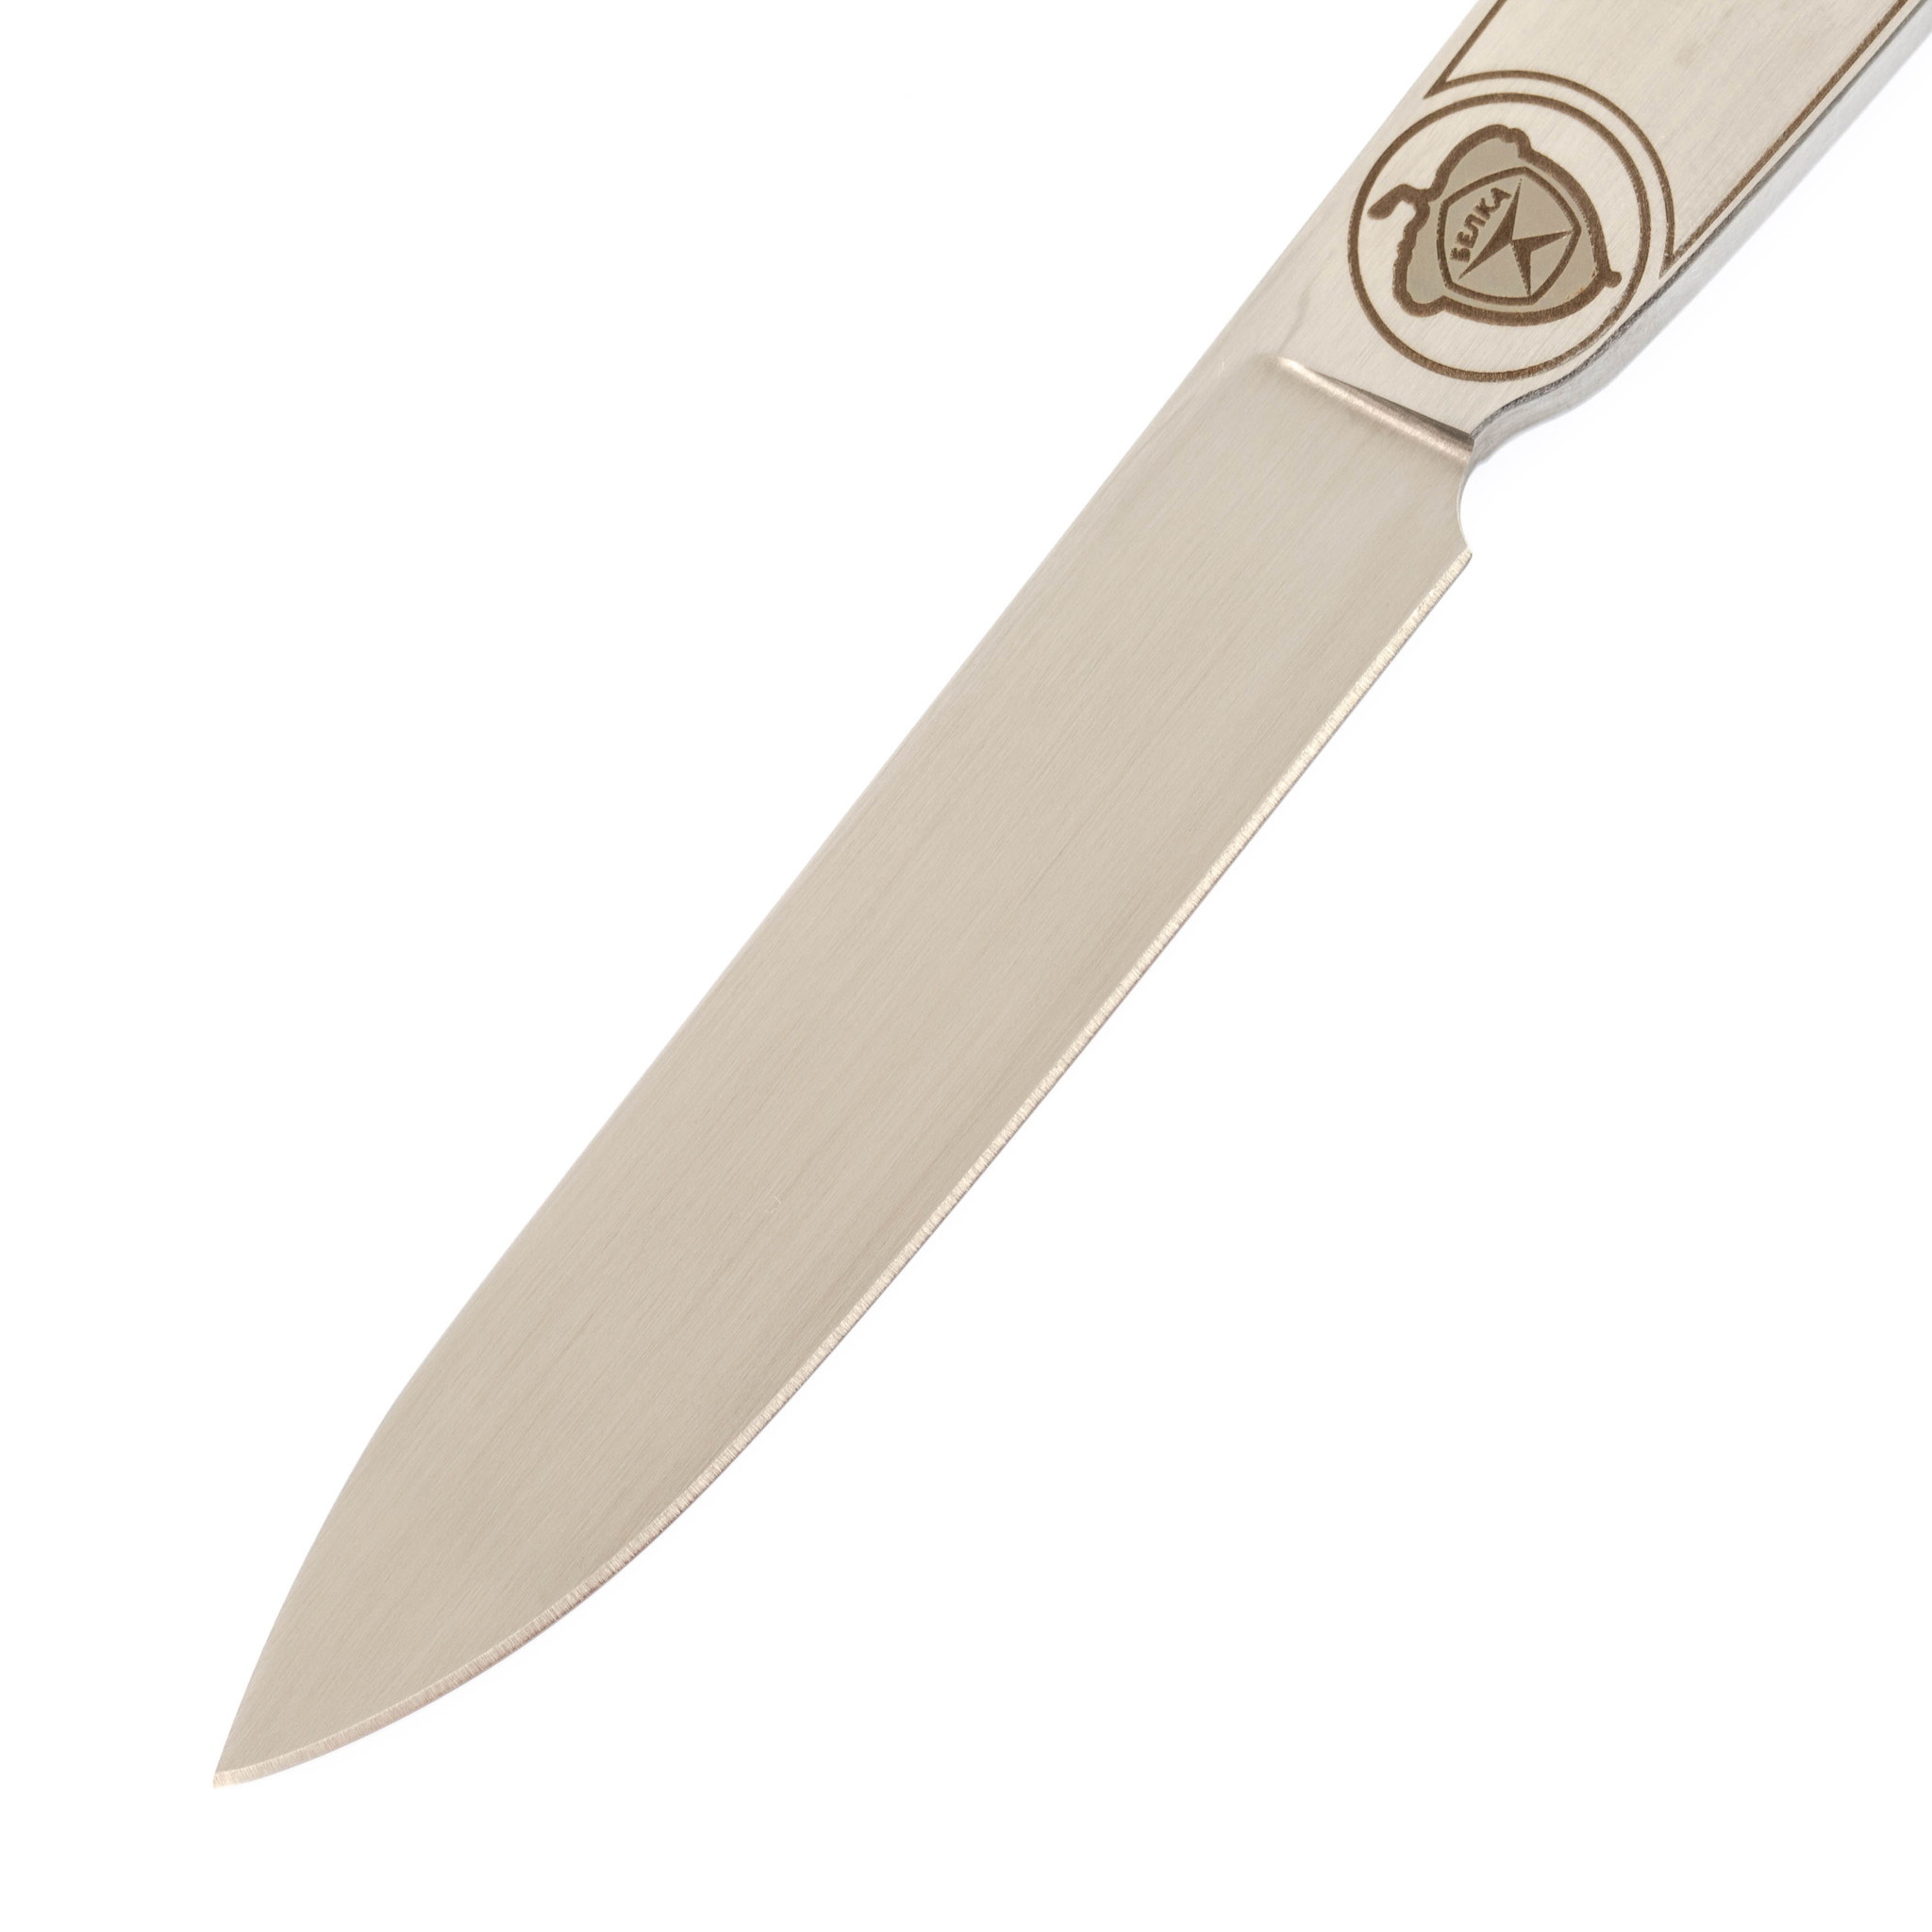 Нож Белка Fixed (Belka), сталь AUS-8 - фото 2